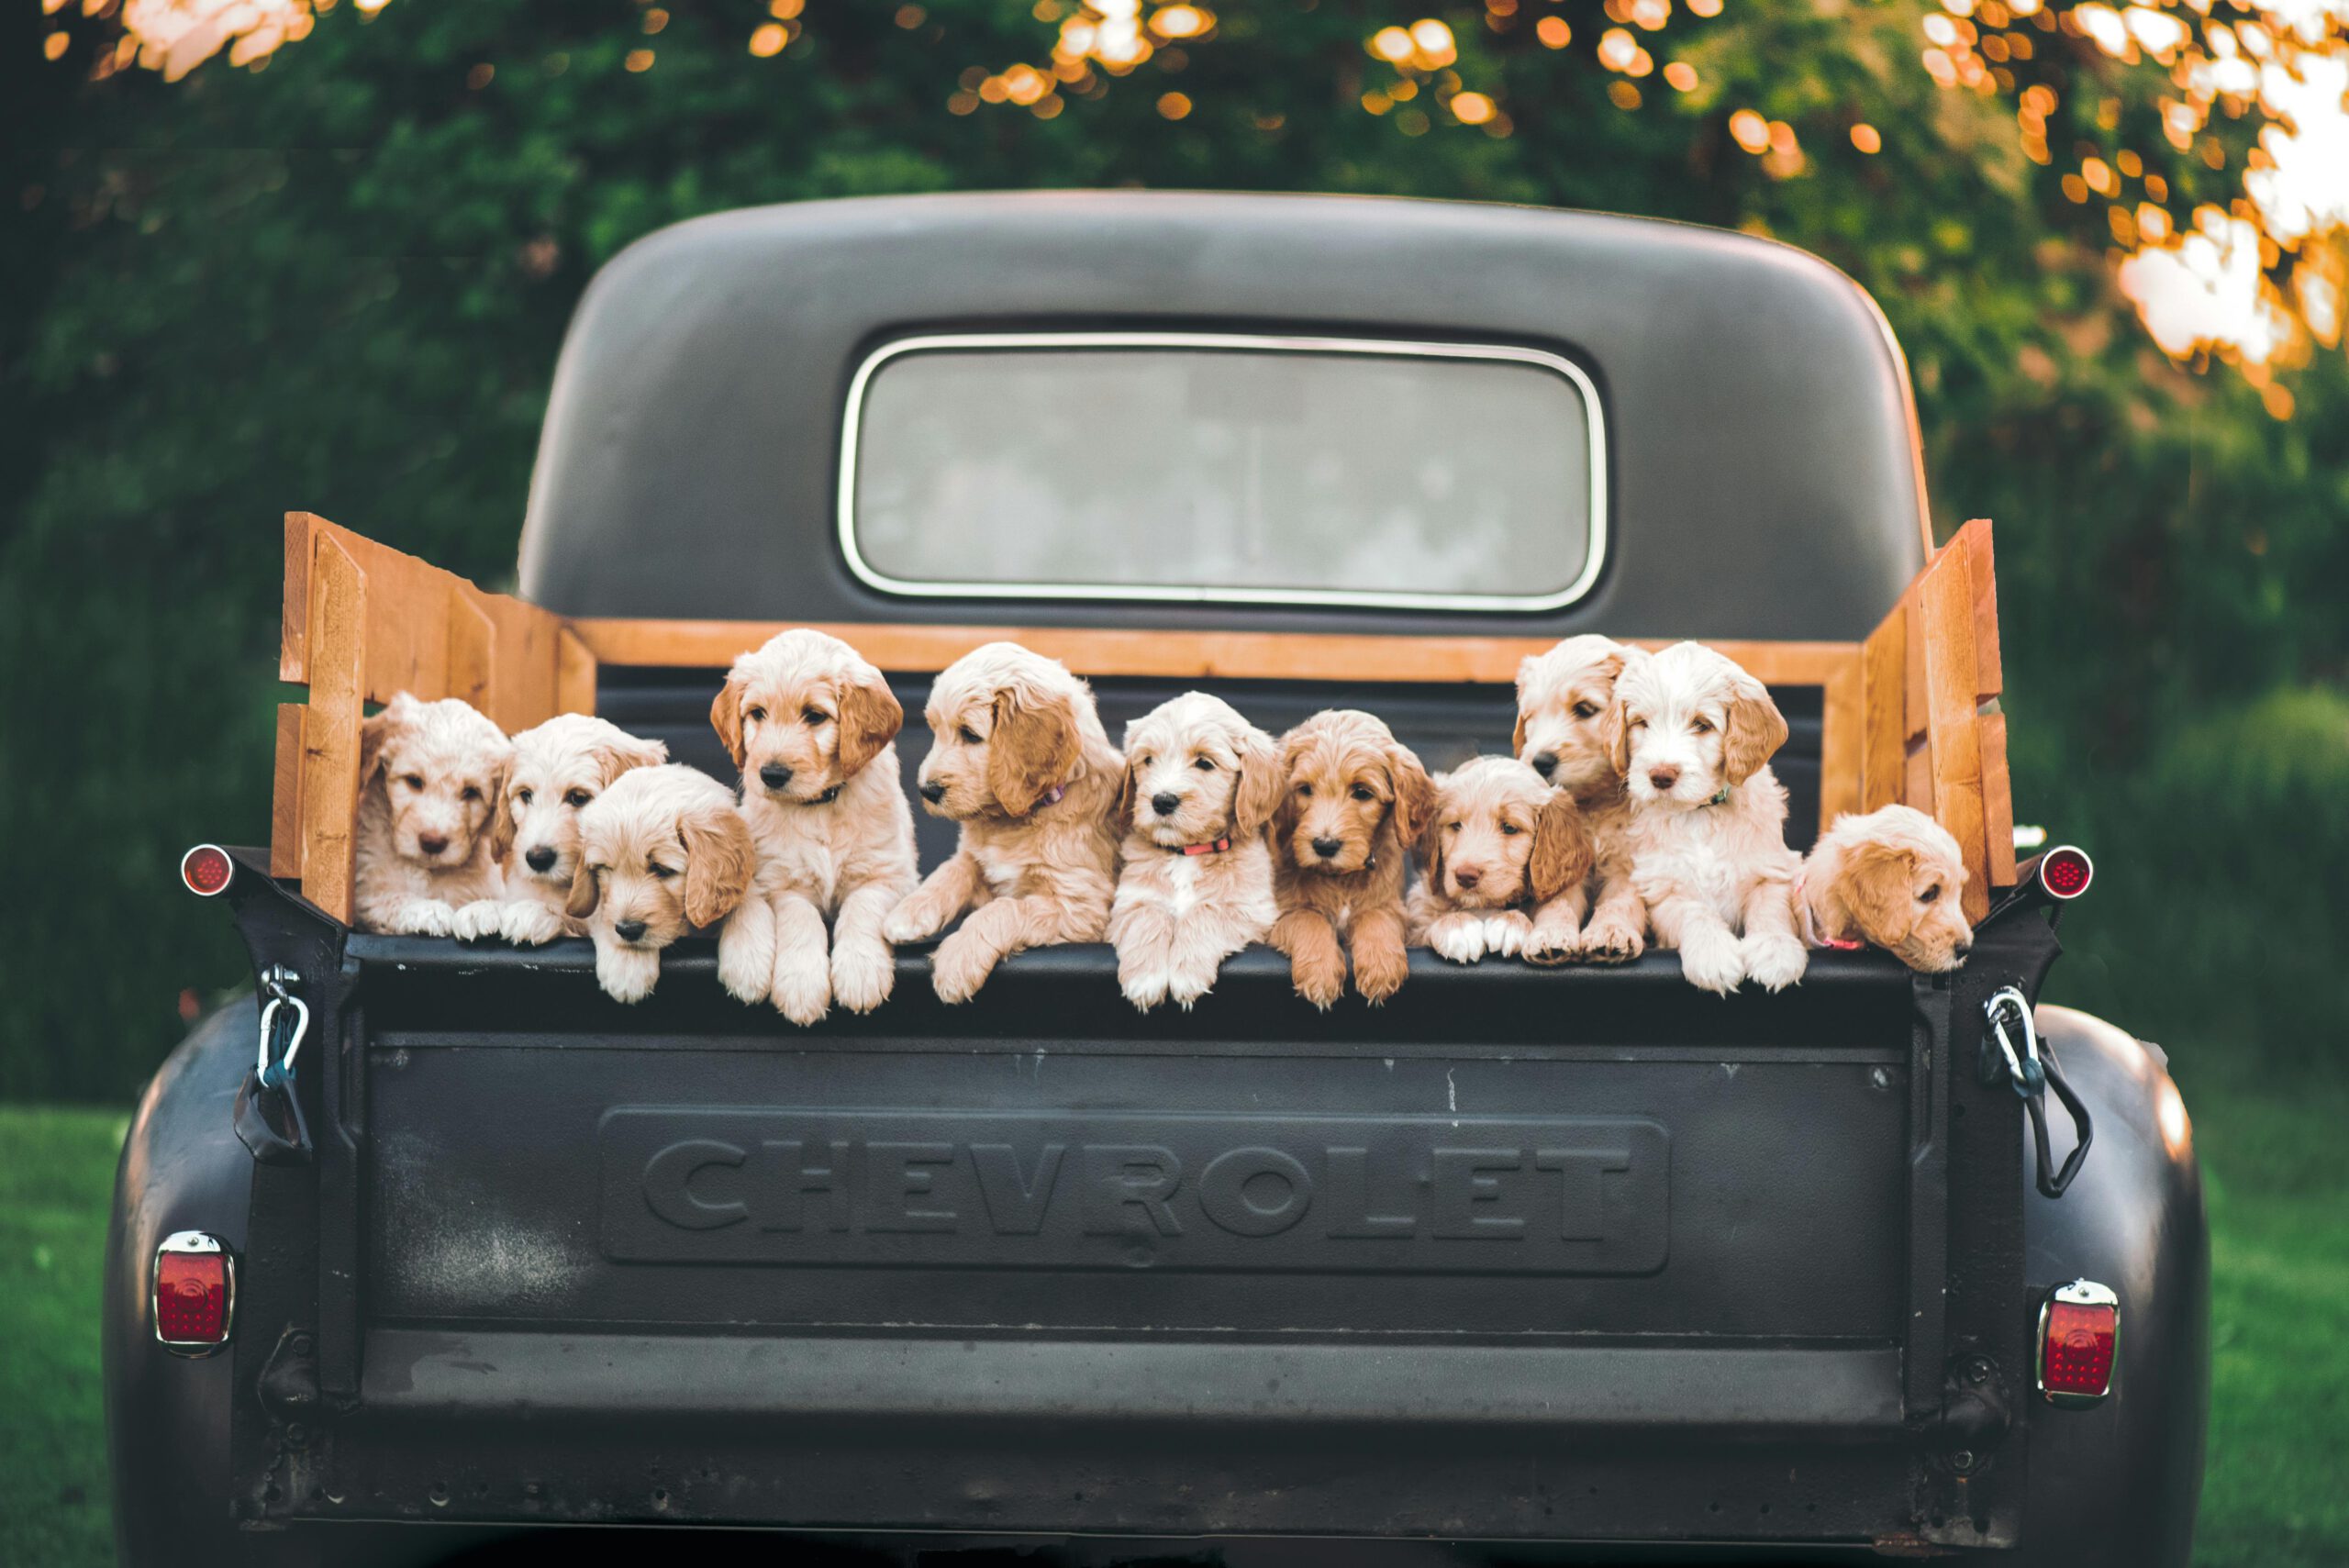 Introducing Ohio Cavapoo Puppies at Puppy Love Paradise